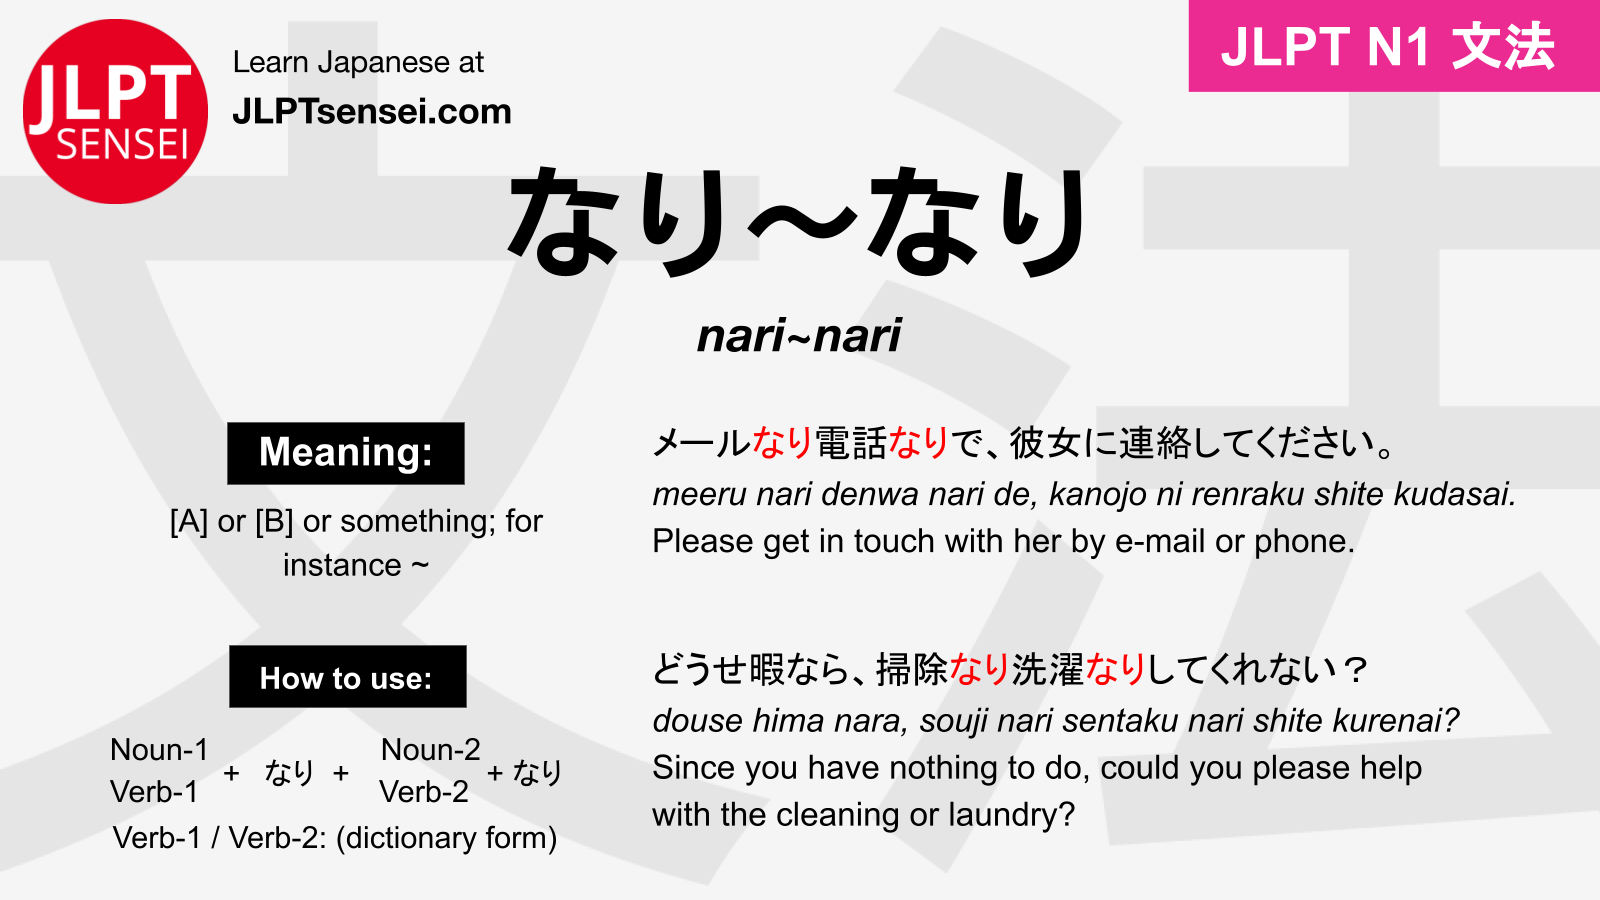 JLPT N1 Grammar: なり～なり (nari~nari) Meaning – JLPTsensei.com